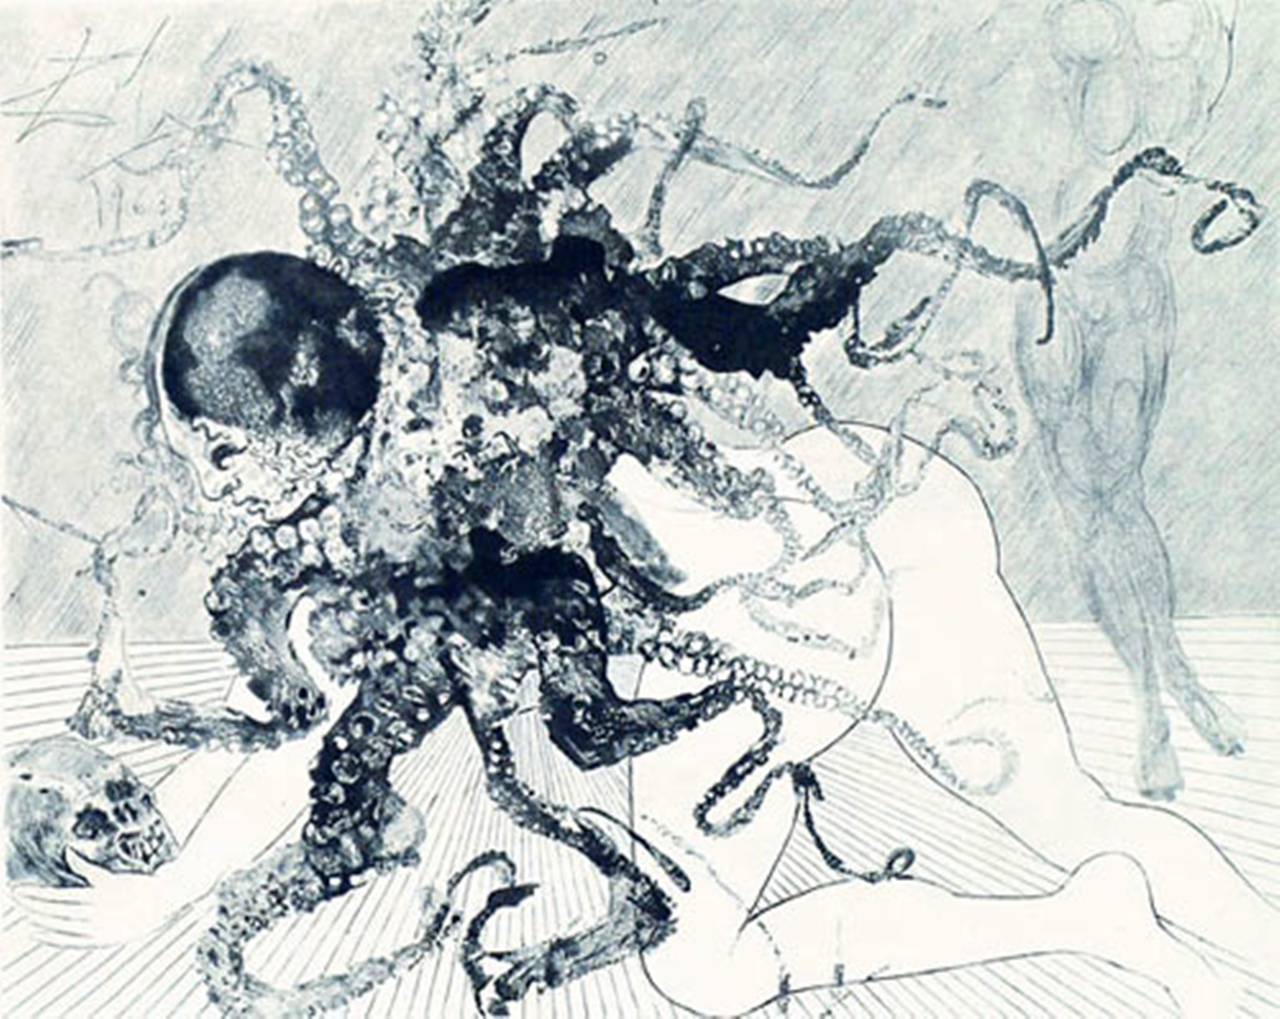 Medusa - Print by Salvador Dalí